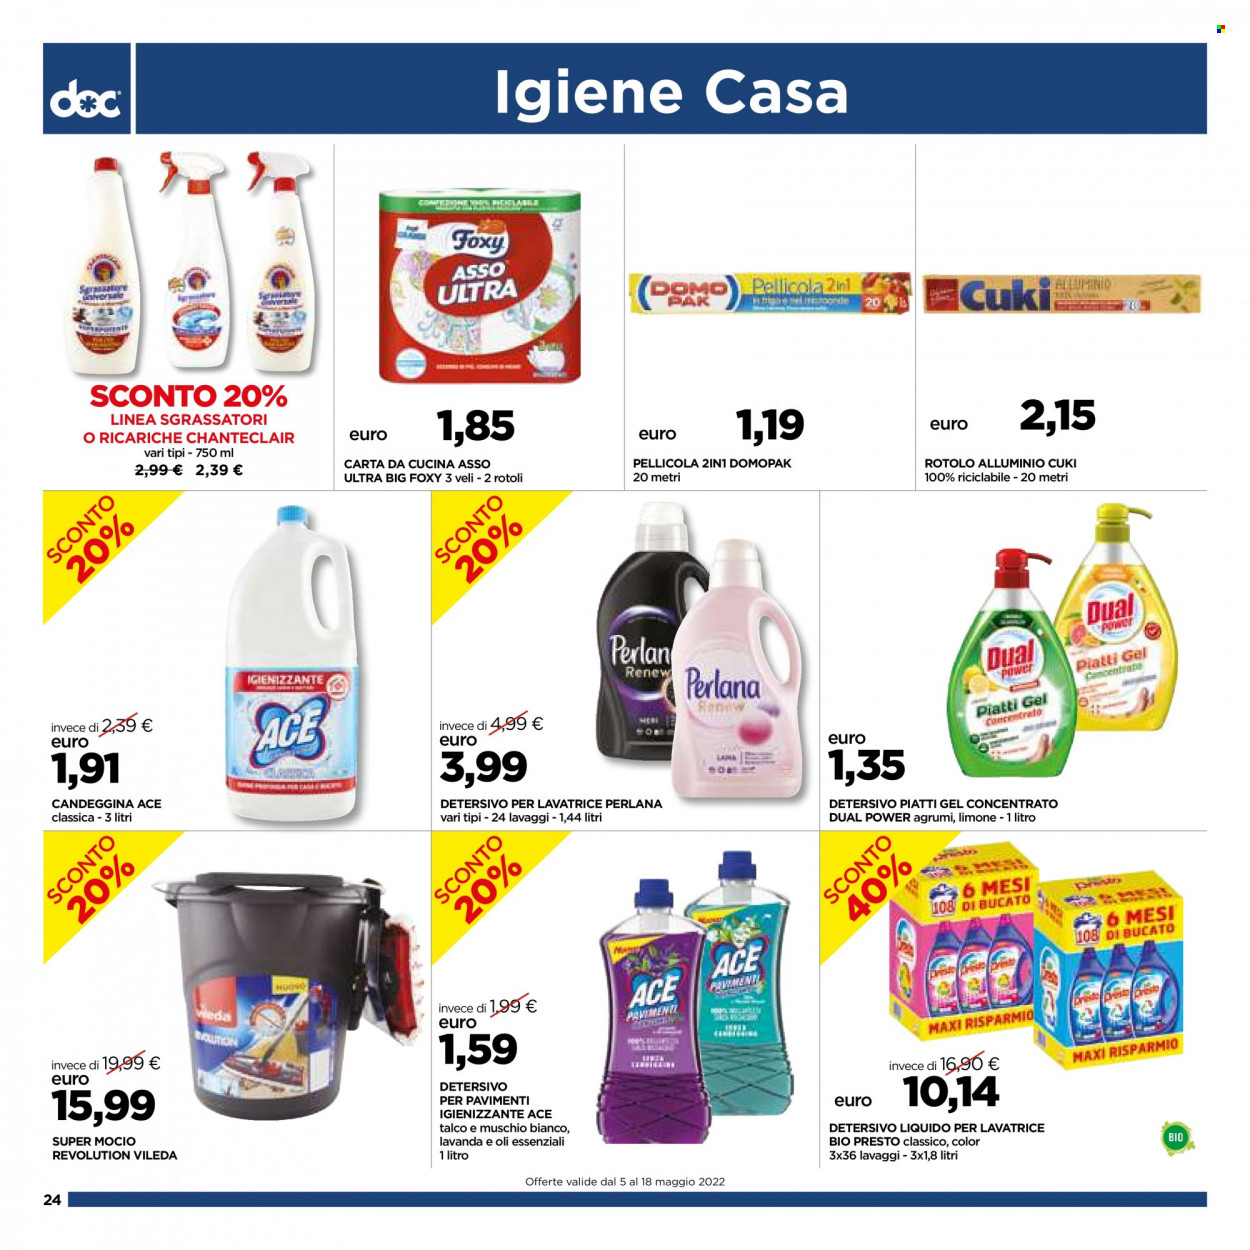 Volantino doc supermercati - 5.5.2022 - 18.5.2022. Pagina 24.